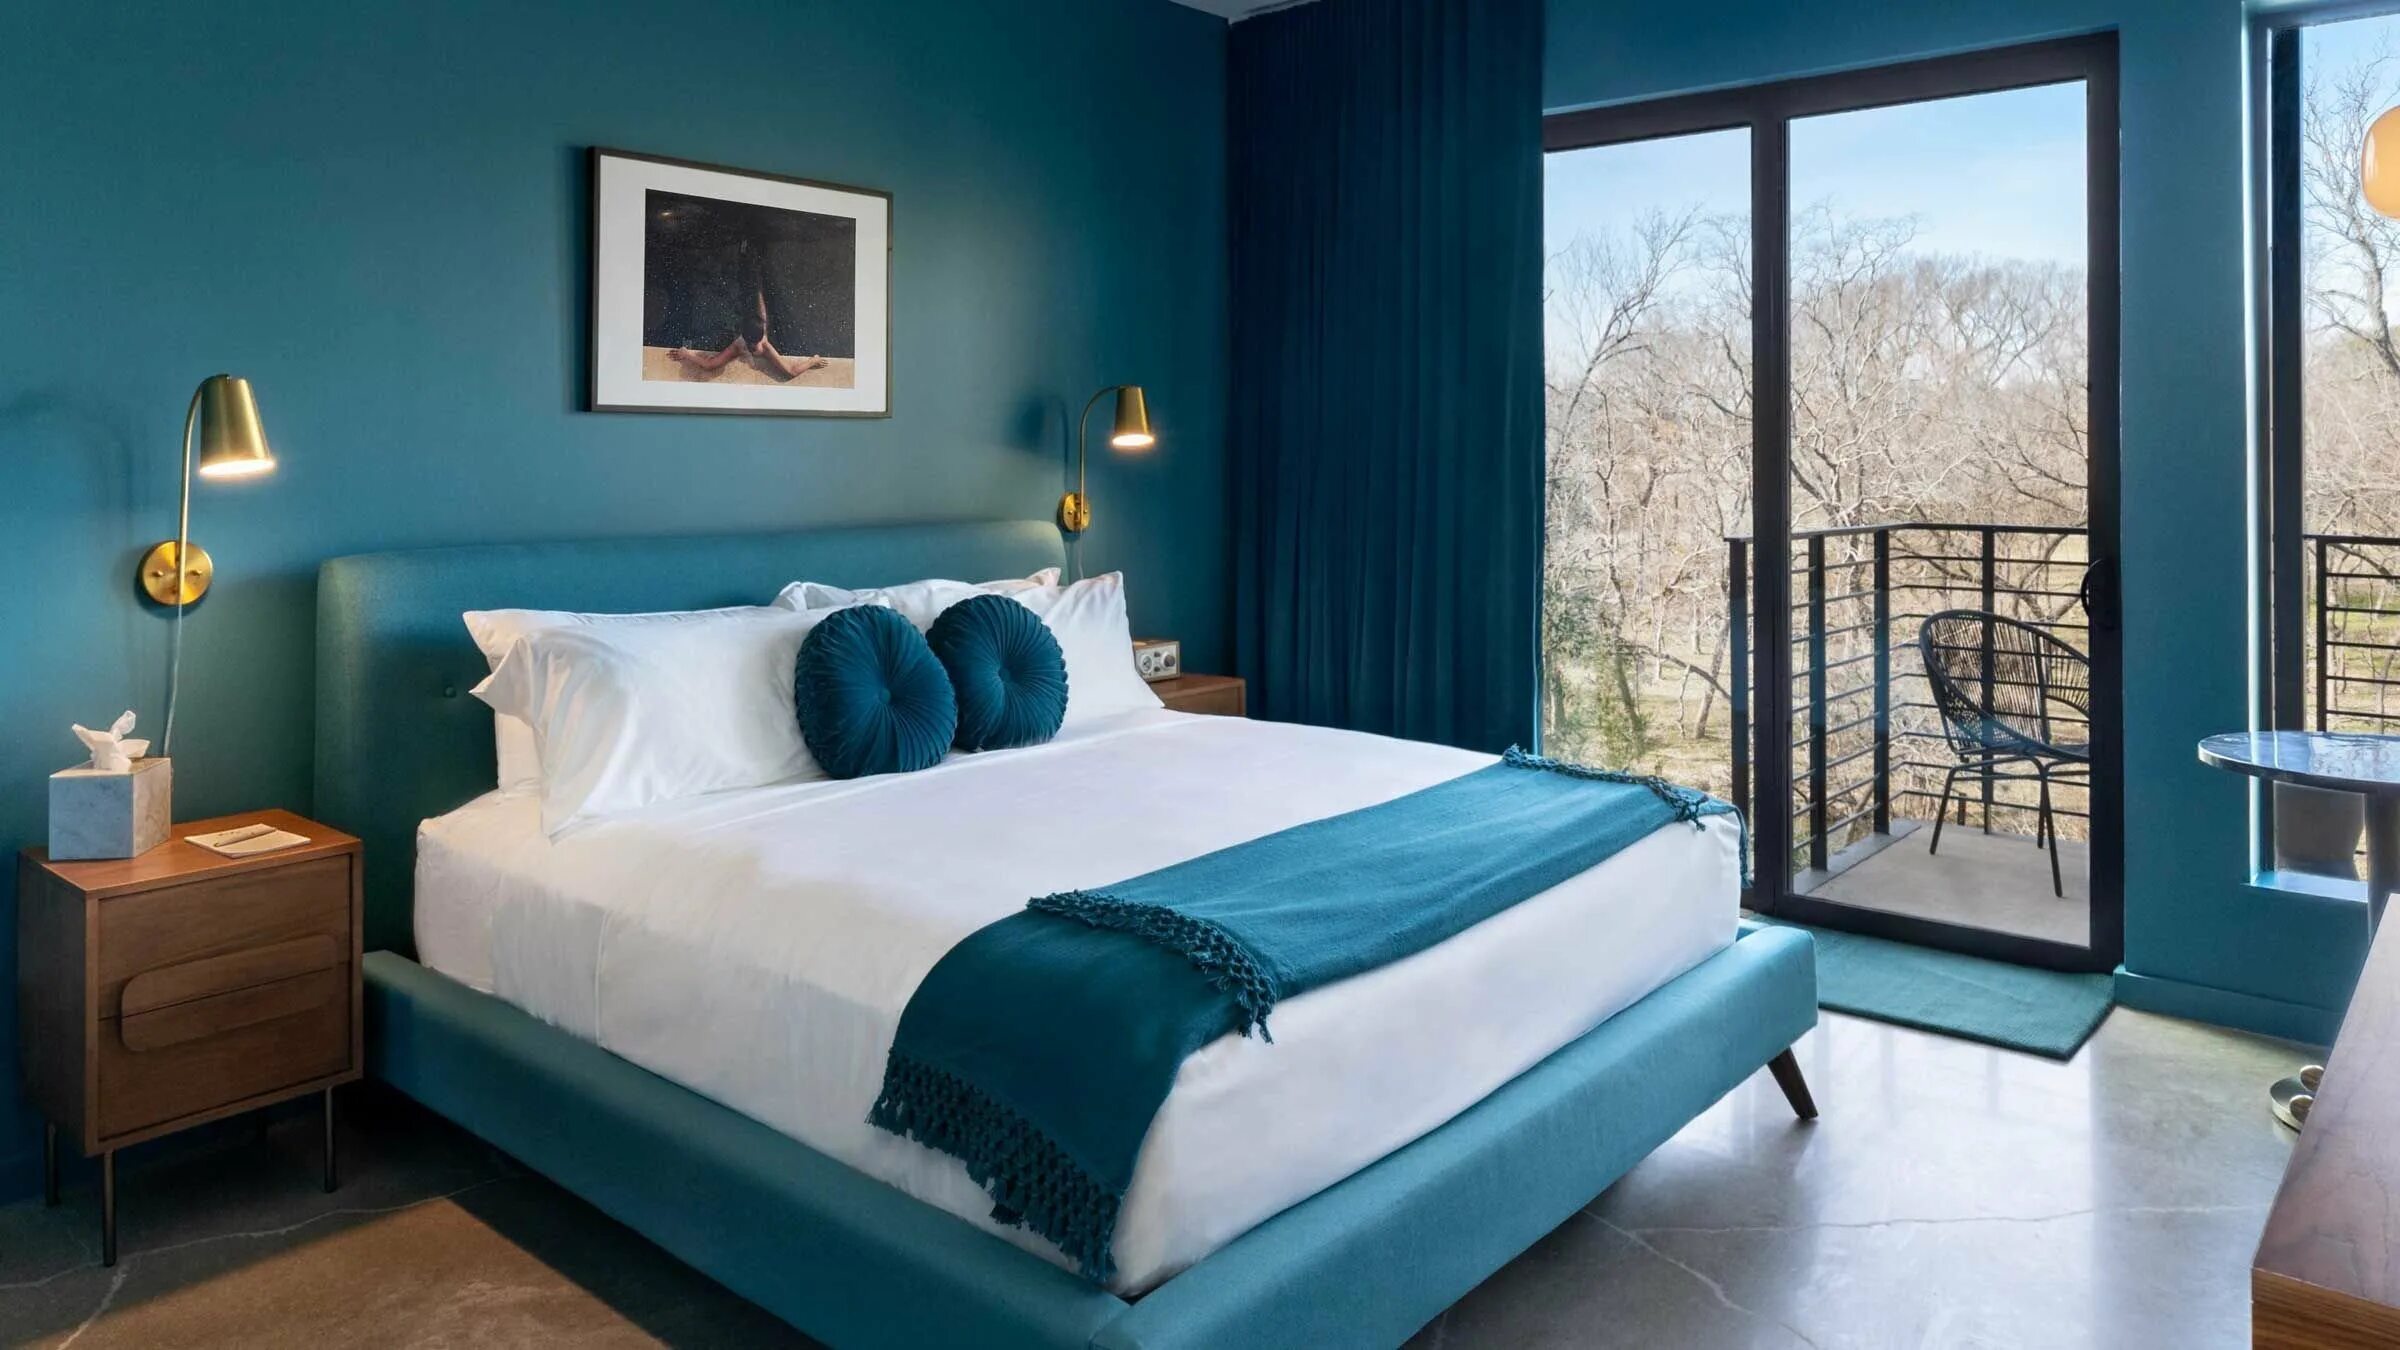 Цветвилл. Бирюзовая спальня. Спальня в синих тонах. Спальня цвета морской волны. Спальня в бирюзовом цвете.